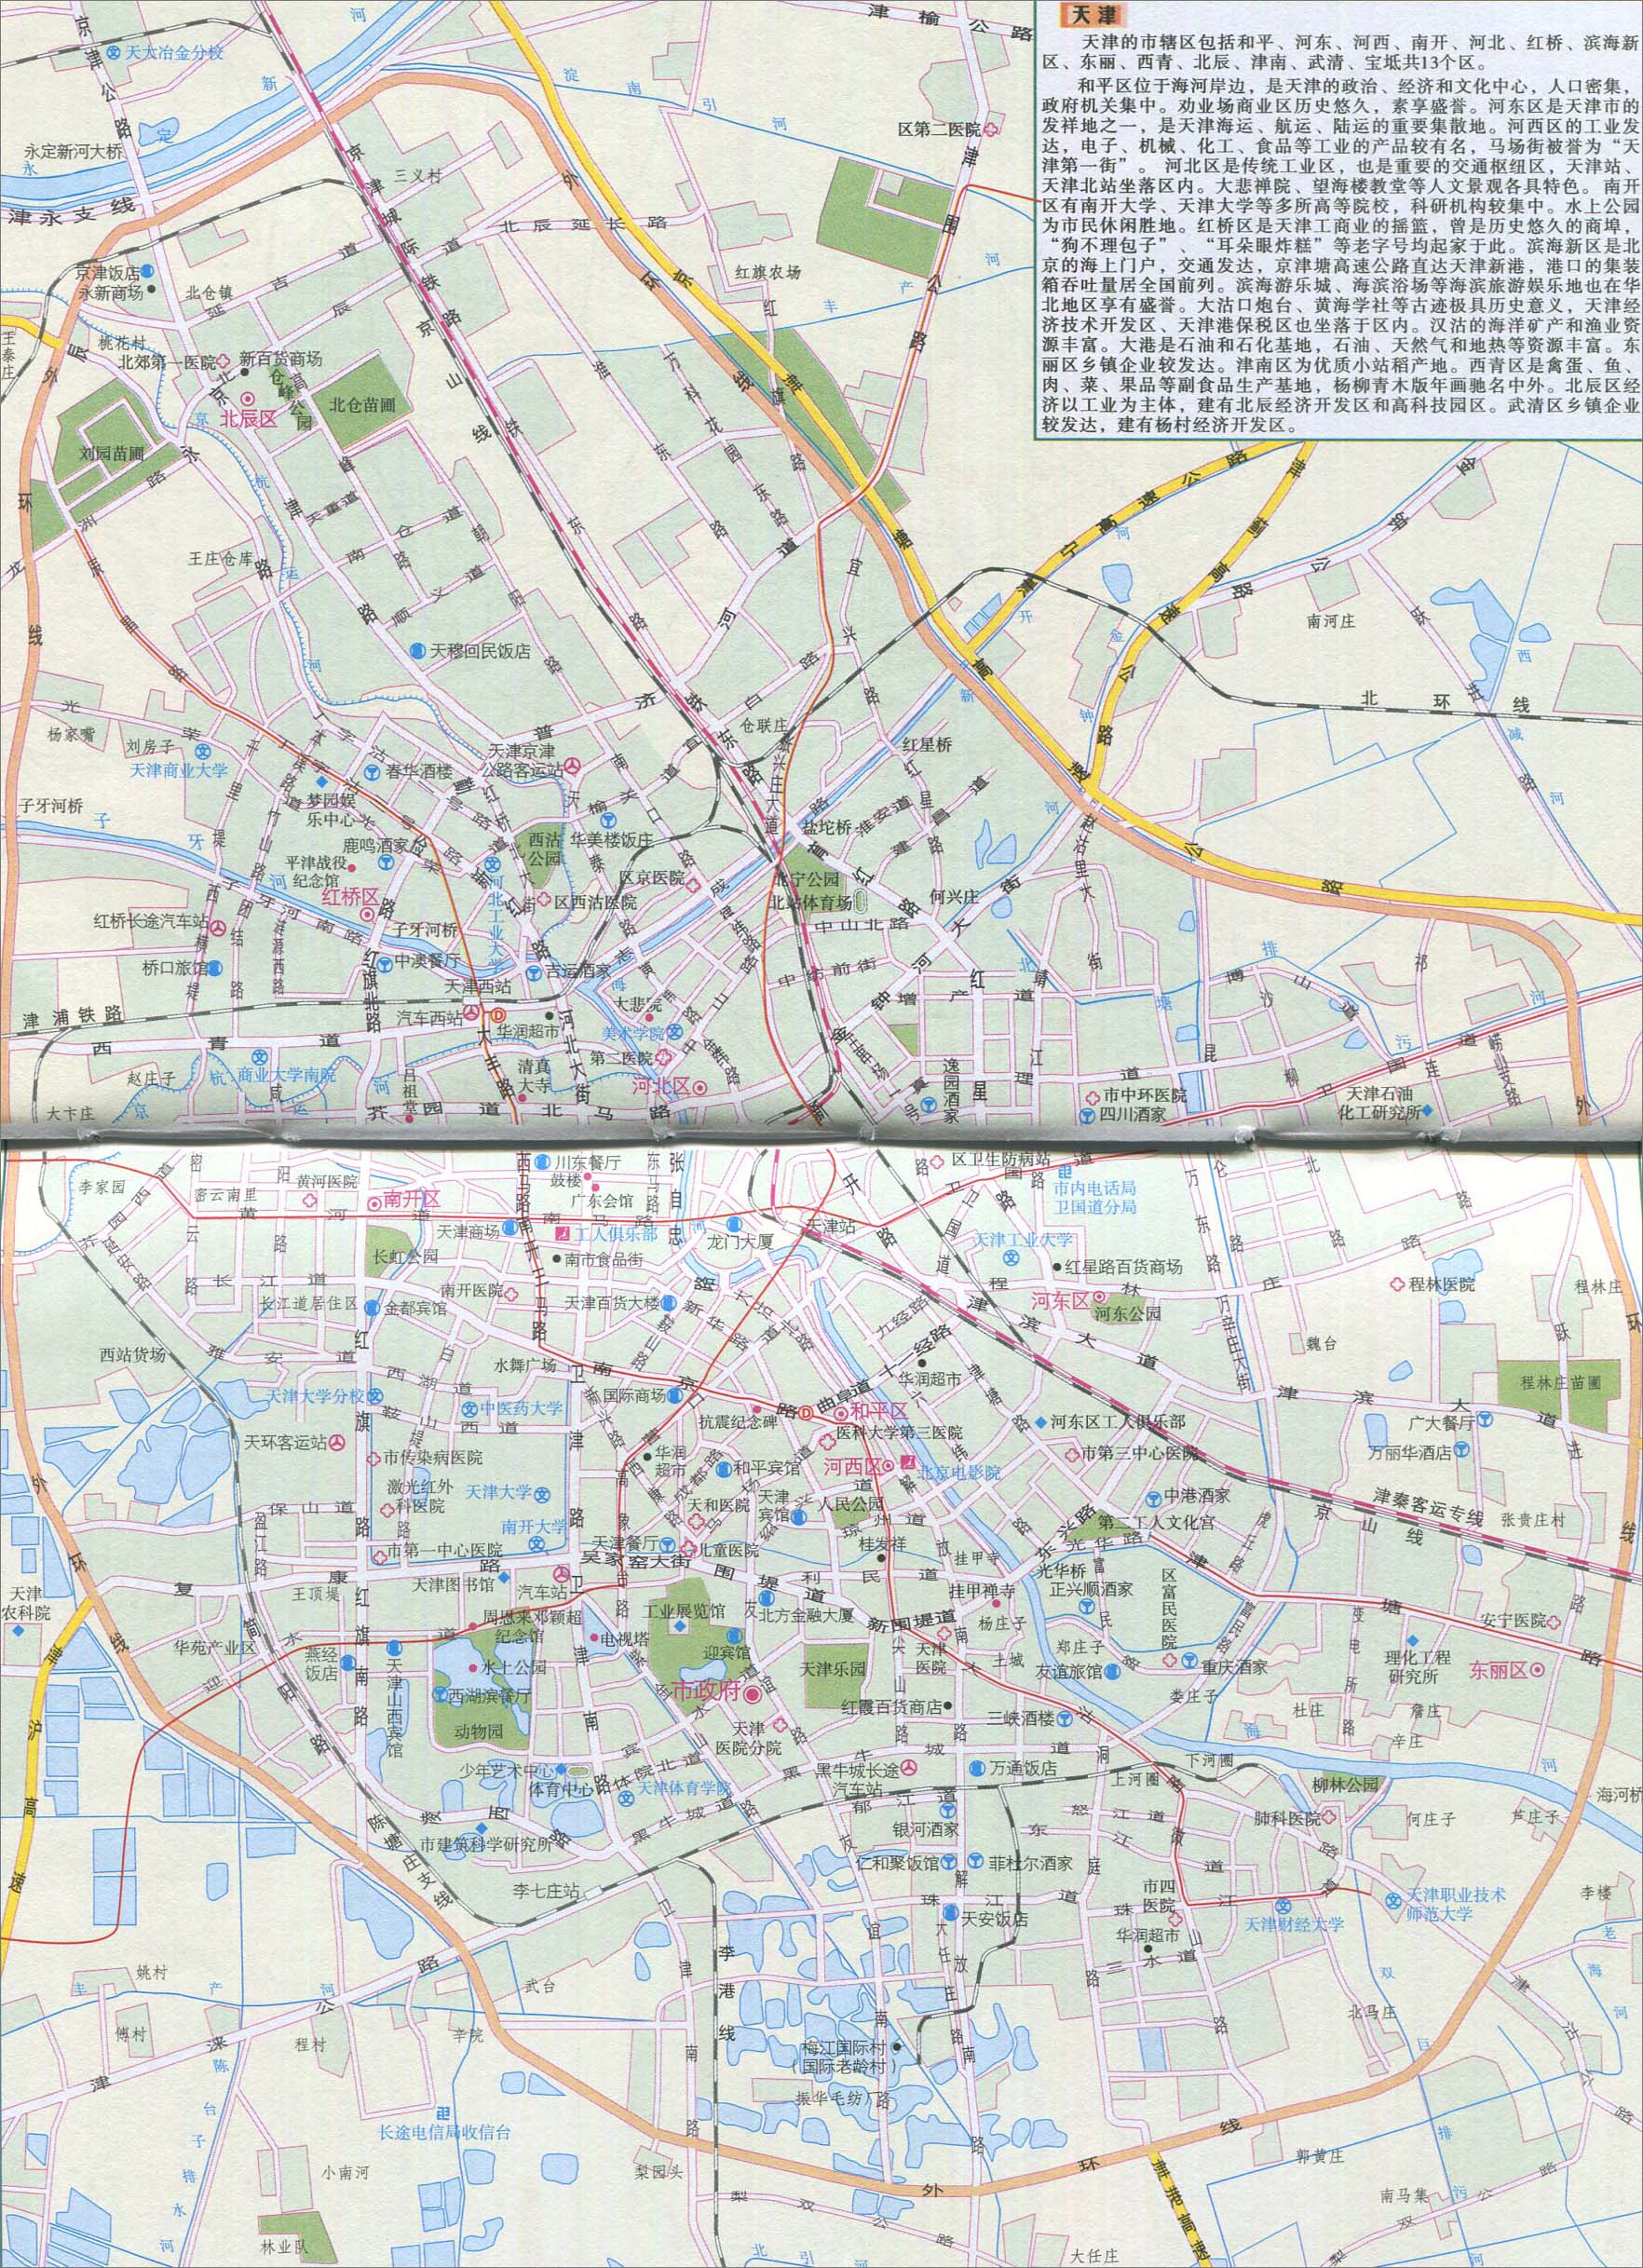 地图库 旅游地图 天津旅游 >> 天津城区旅游地图  景点导航:世界旅游图片